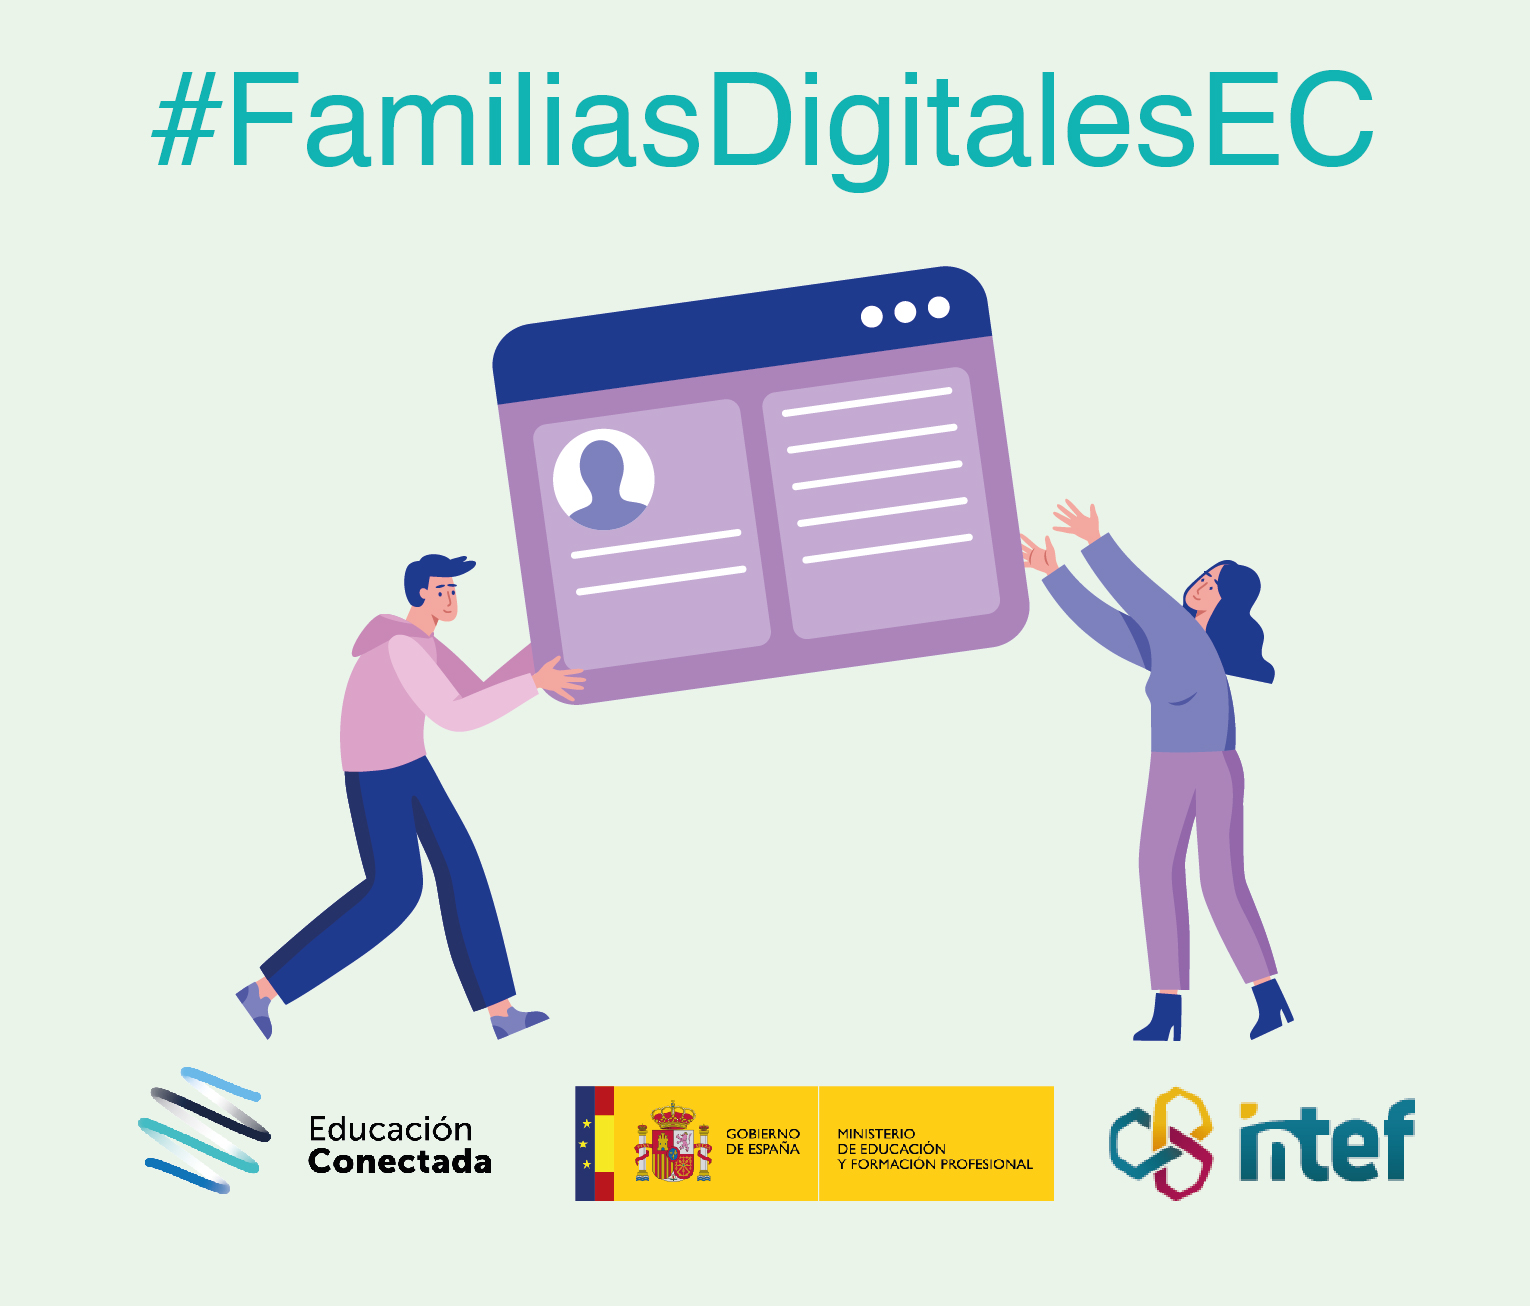 Familias digitales: Interactúa en la red y gestiona tu identidad digital (nivel avanzado) FamiliasDig5